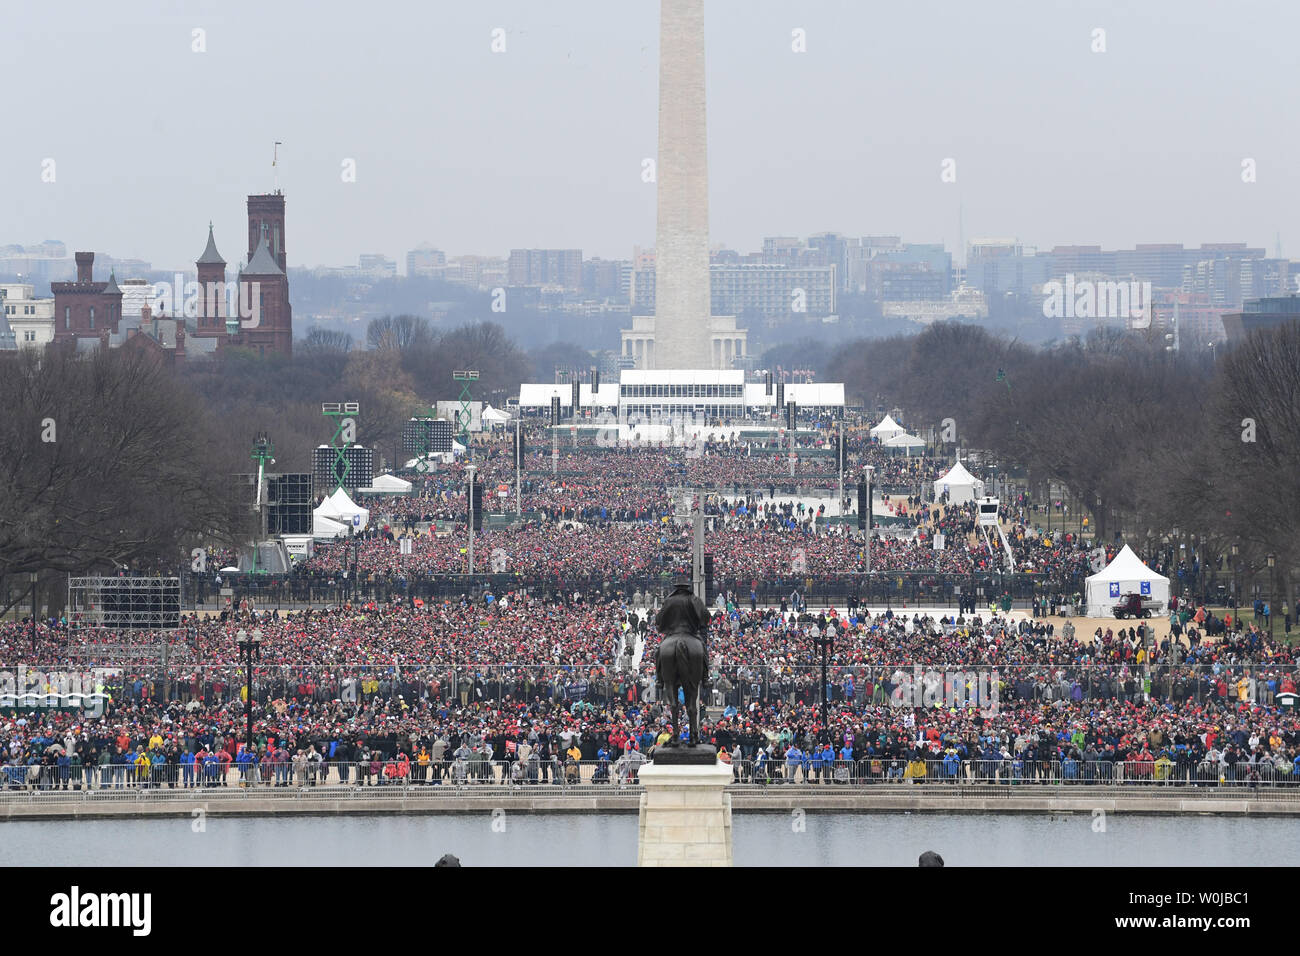 Zuschauern zu füllen, in der National Mall Zeuge der Amtseinführung von Präsident Donald Trump am 20. Januar 2017 in Washington, D.C.  Trumpf wird der 45. Präsident der Vereinigten Staaten.      Foto von Pat Benic/UPI Stockfoto